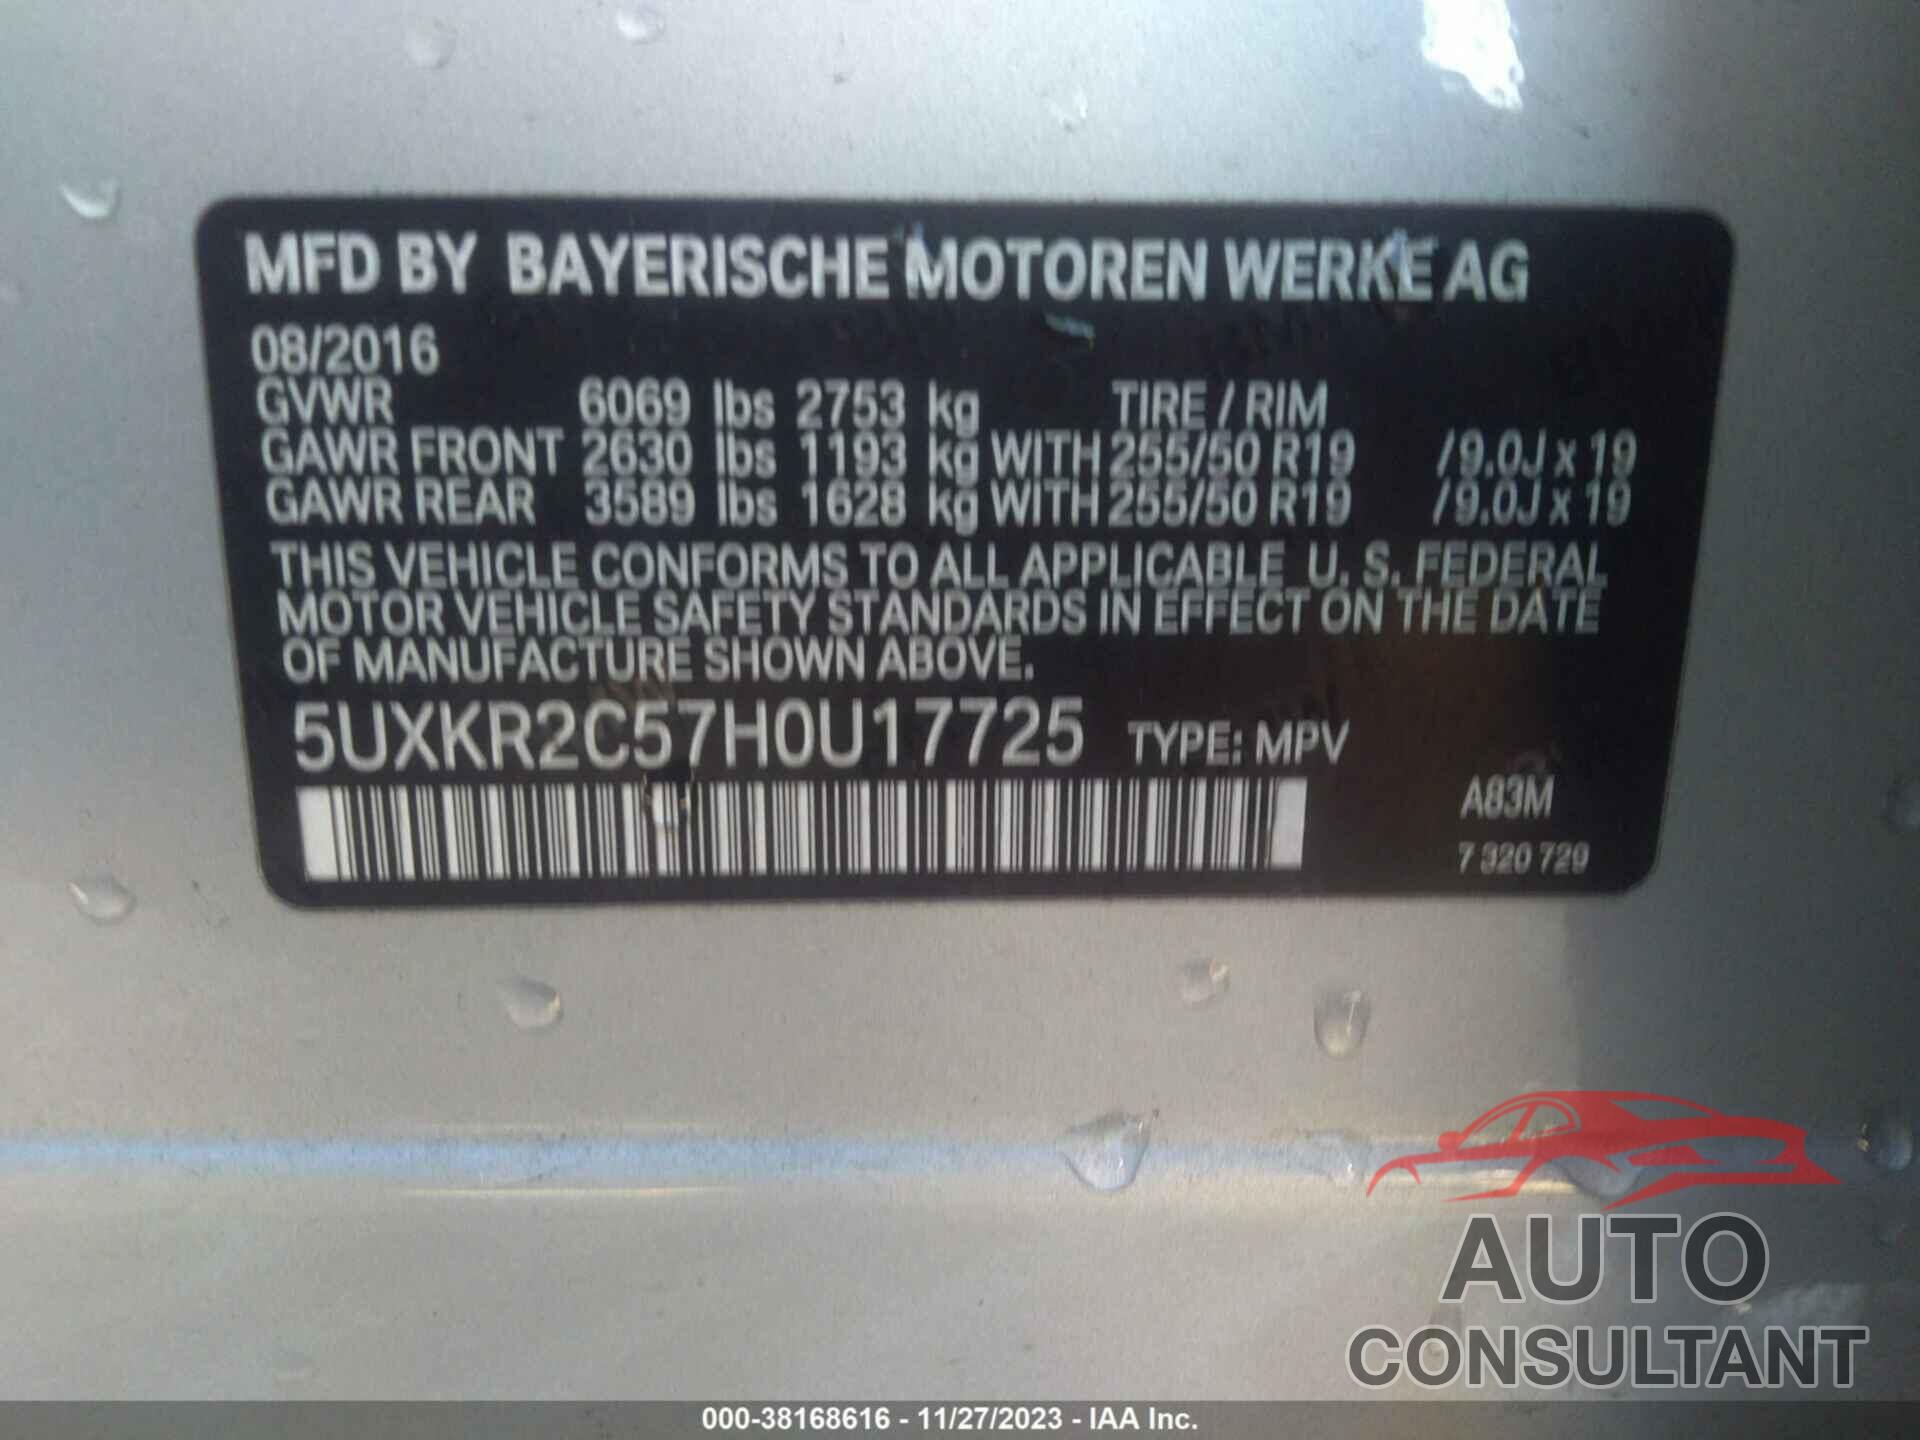 BMW X5 2017 - 5UXKR2C57H0U17725